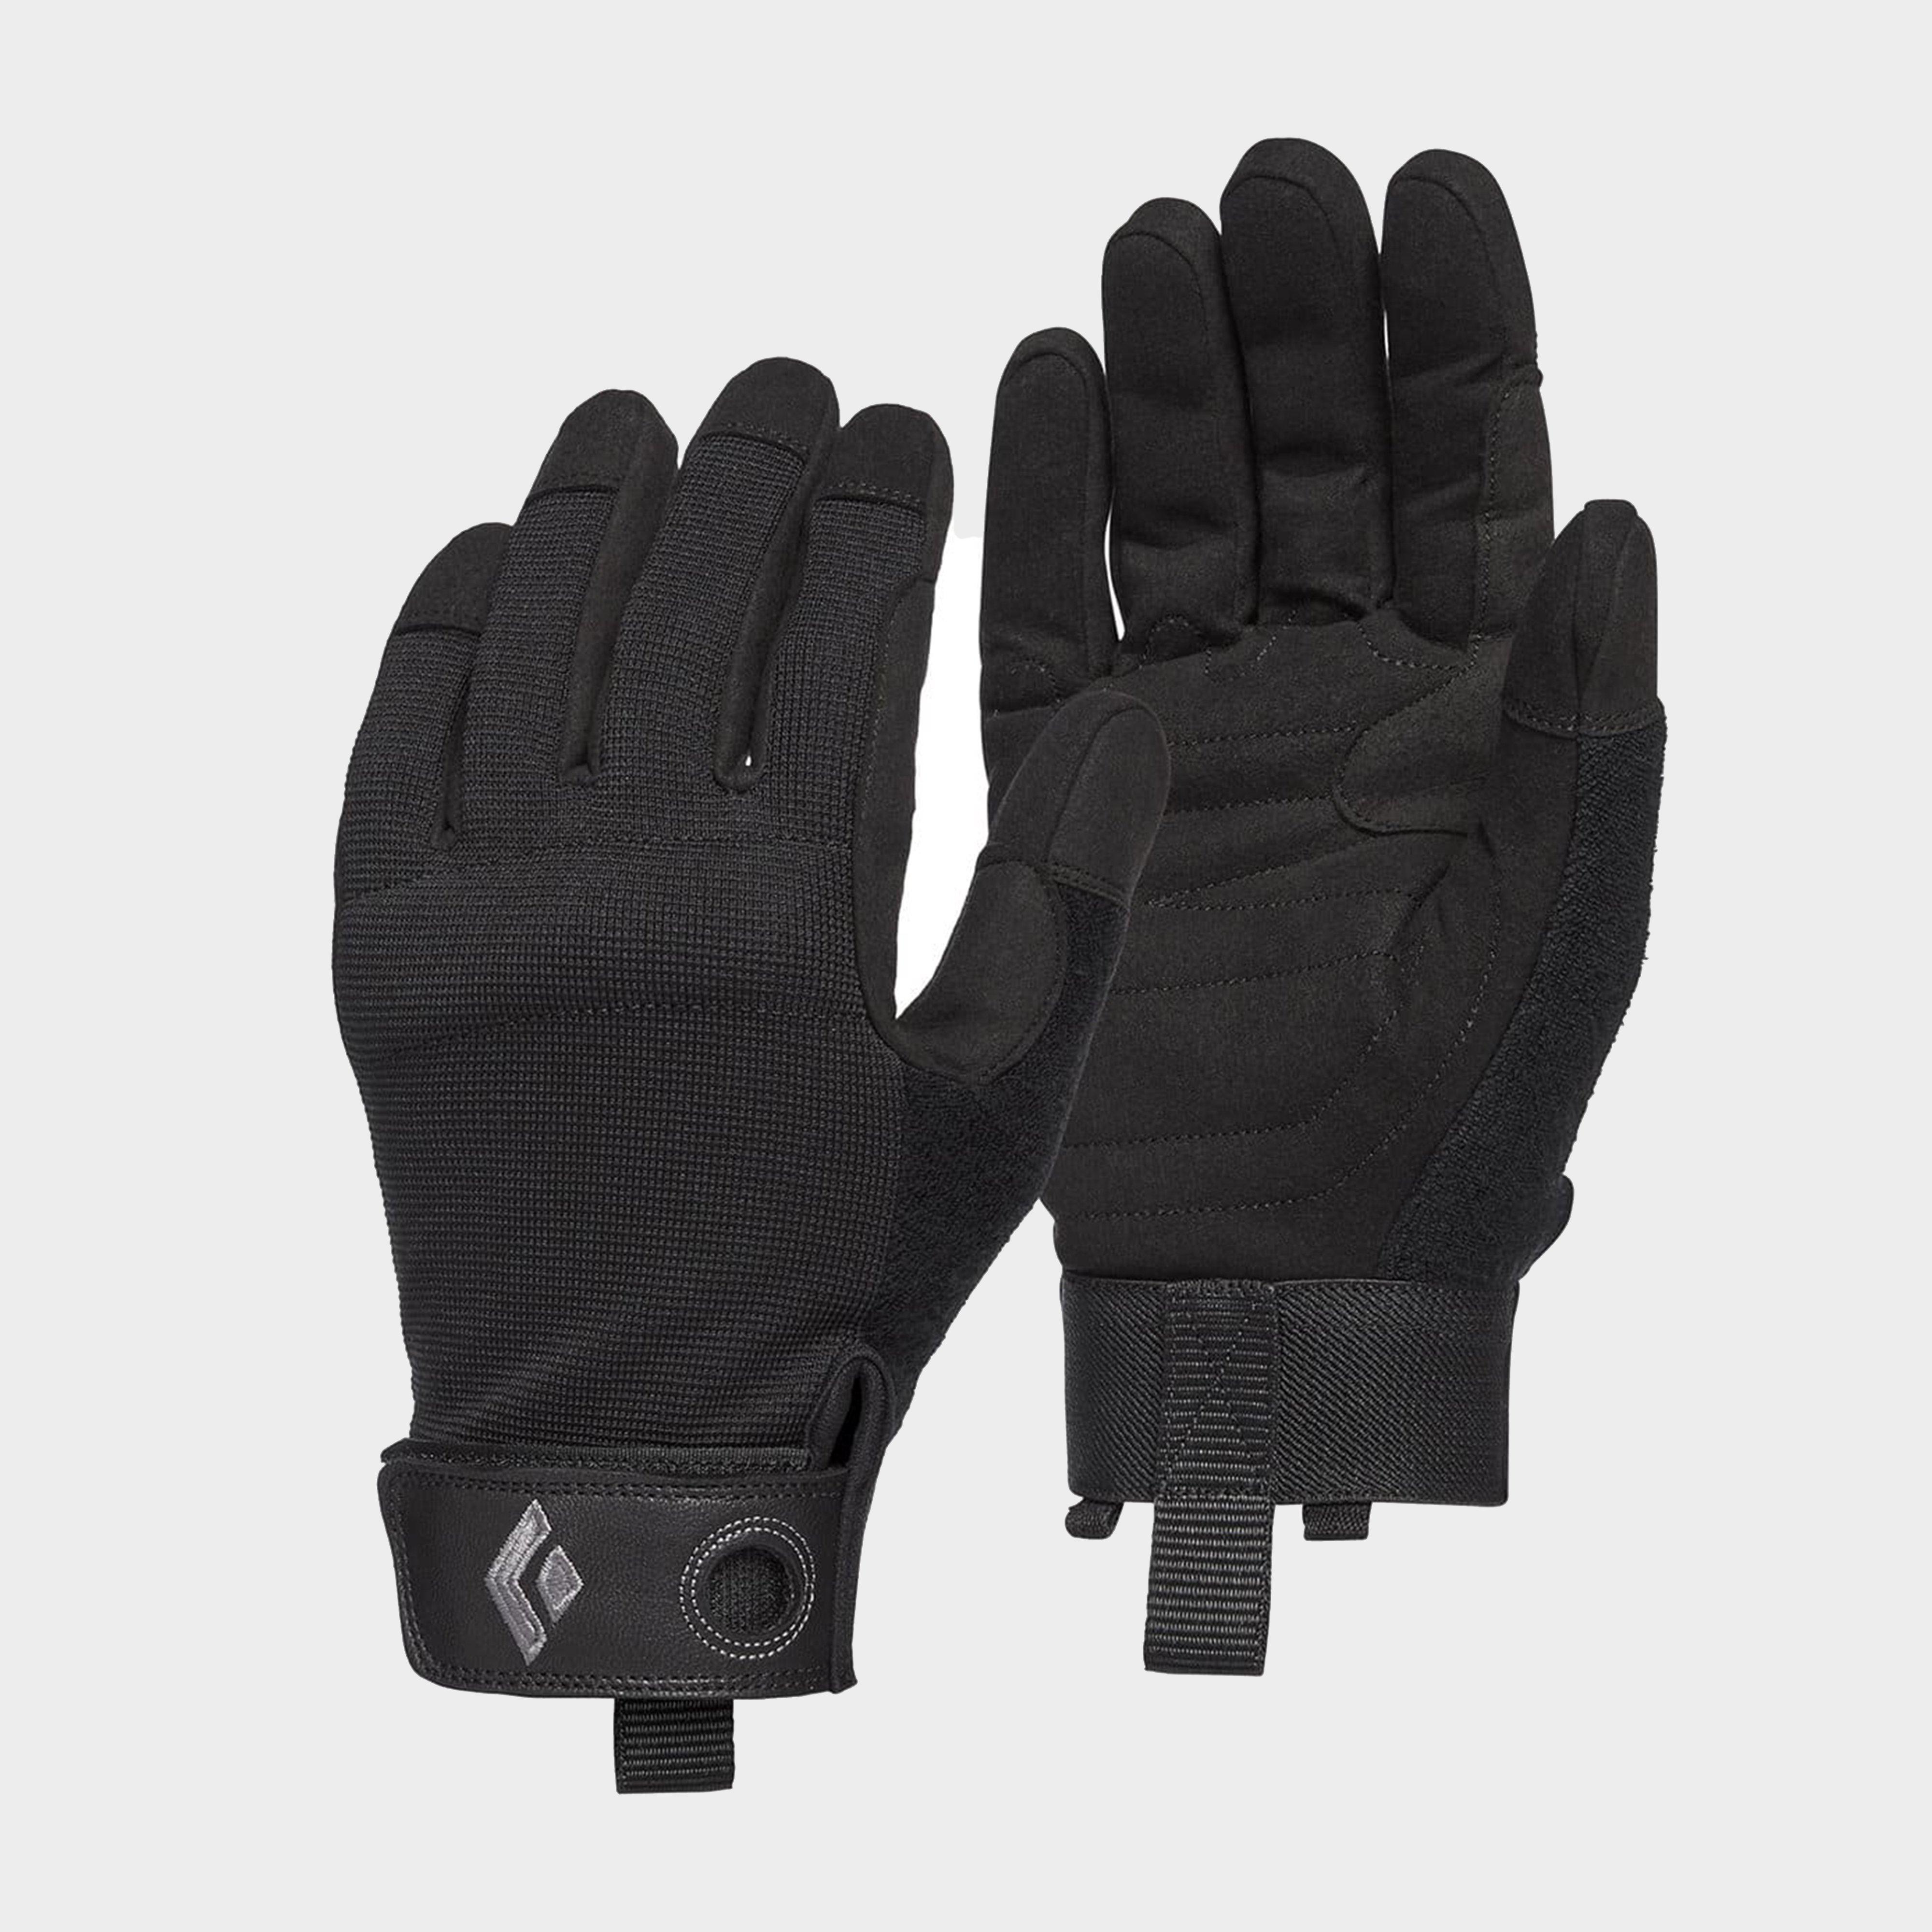 Photos - Winter Gloves & Mittens Black Diamond Crag Gloves, Black 